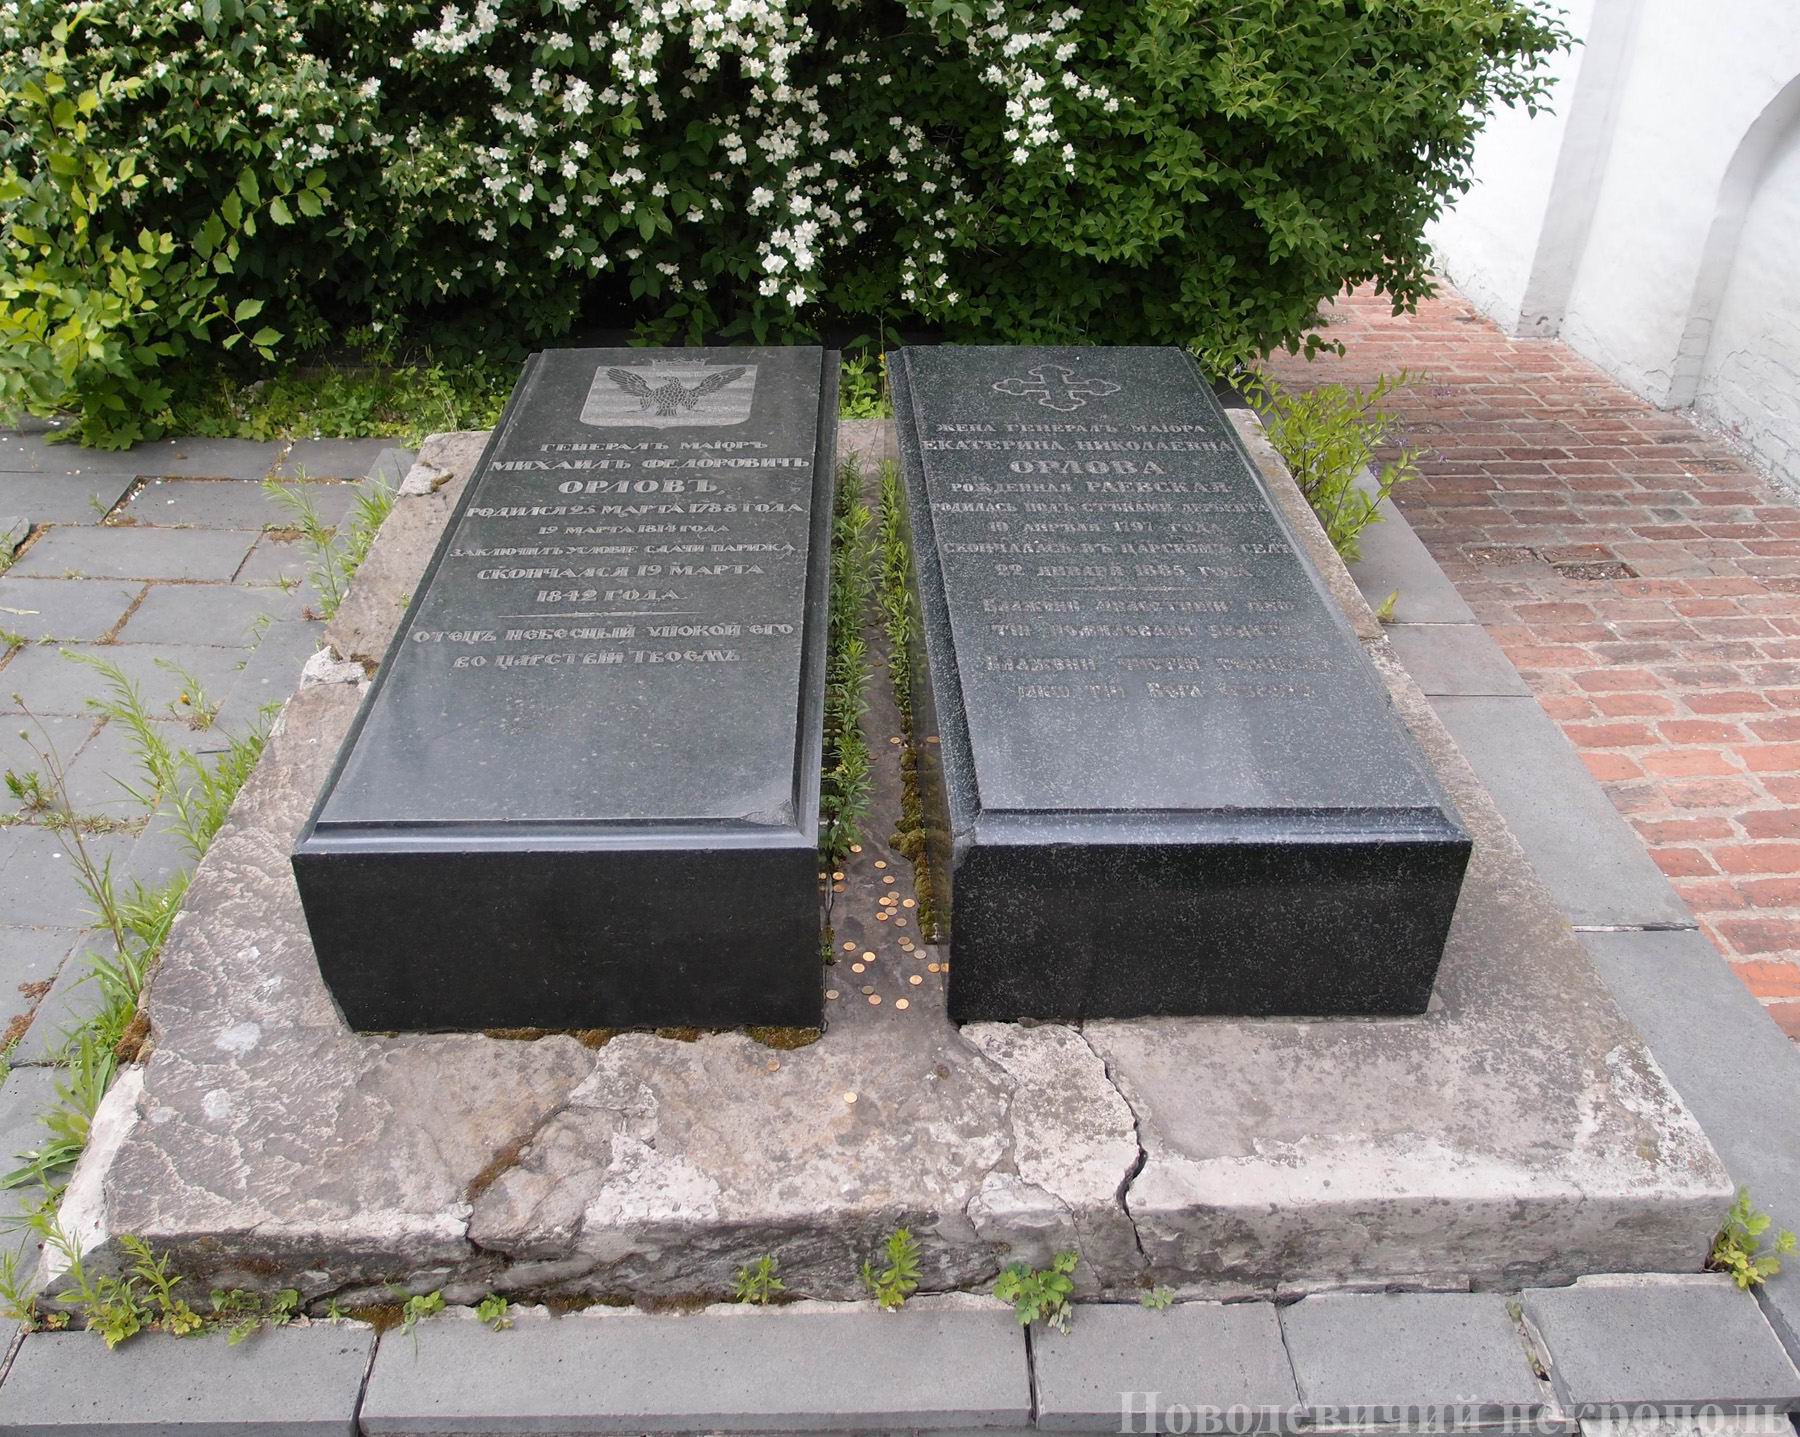 Памятник на могиле Орлова М.Ф. (1788–1842), в Новодевичьем монастыре. Нажмите левую кнопку мыши, чтобы увидеть фрагмент.